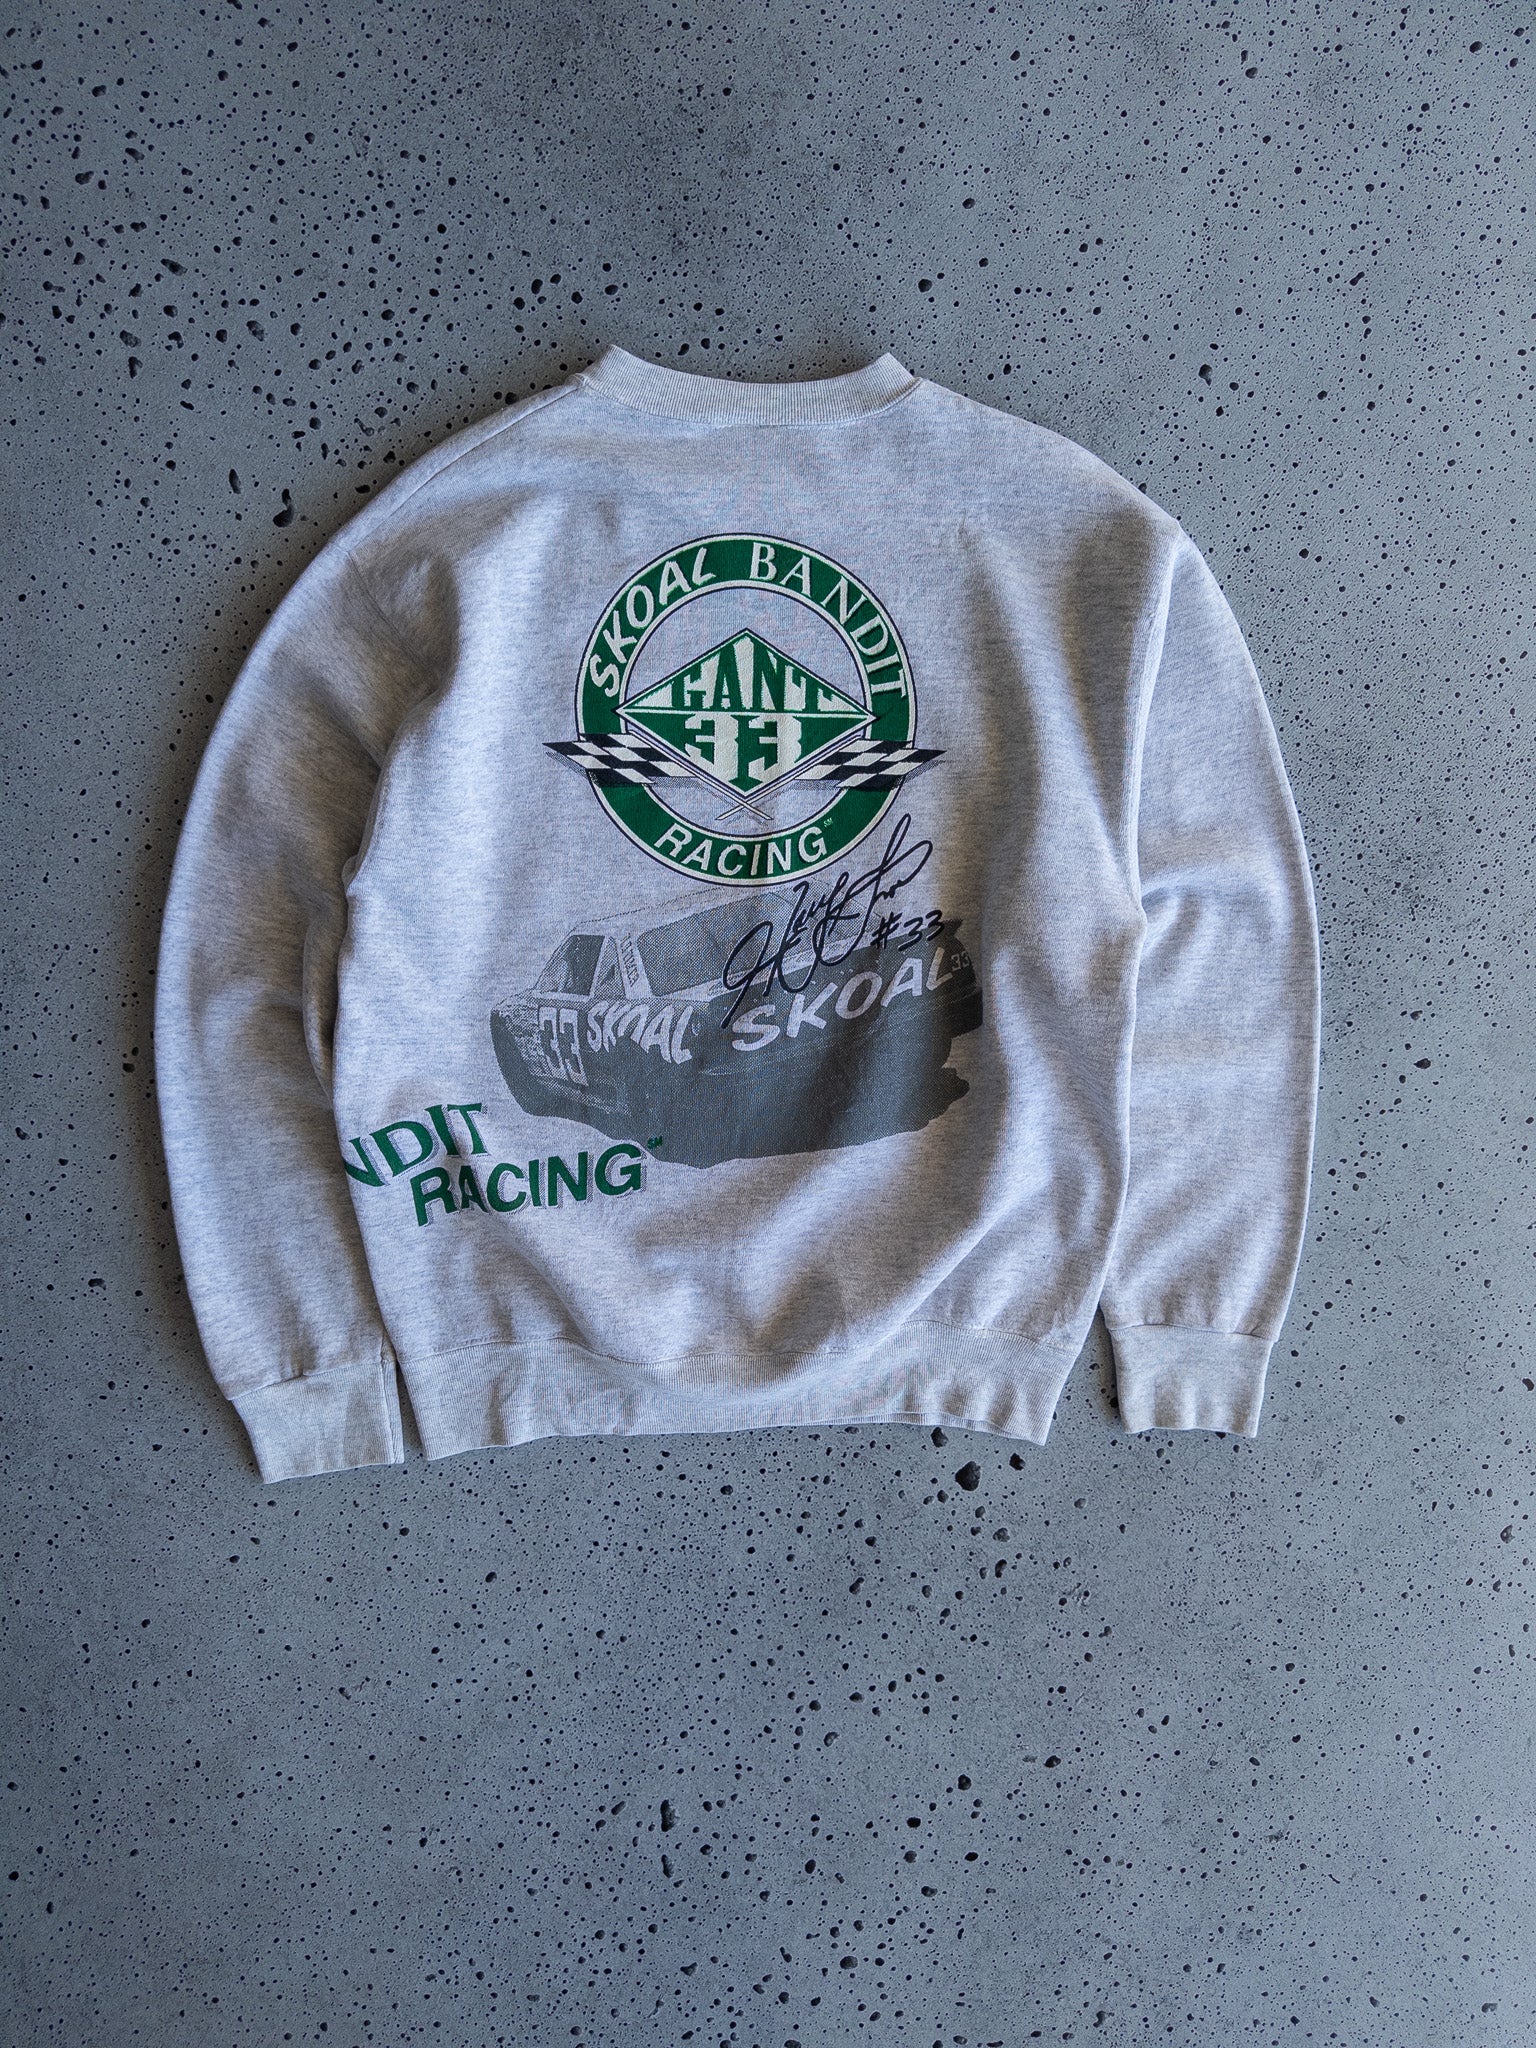 Vintage Gant Skoal Bandit Racing Sweatshirt (L)